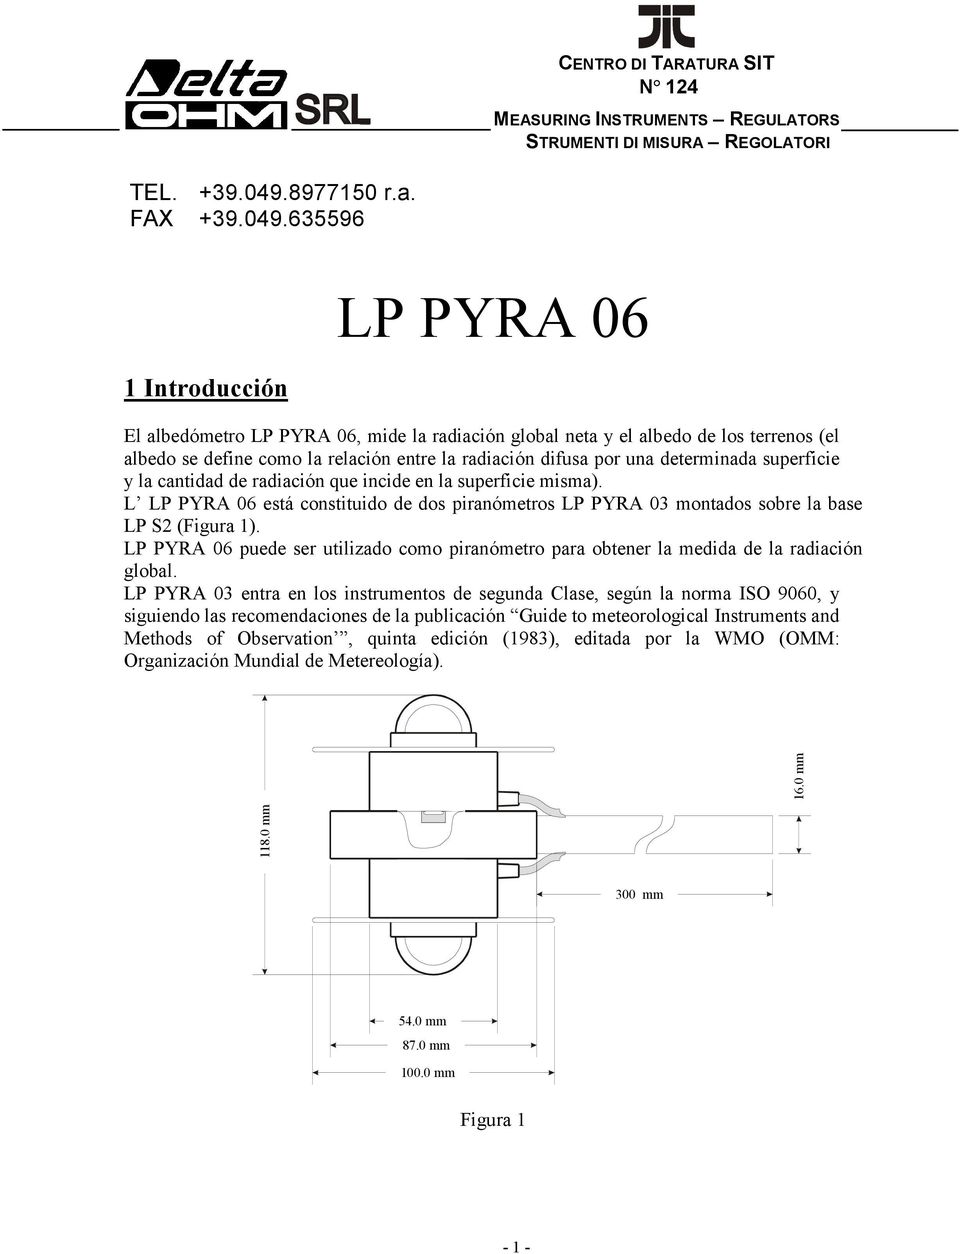 635596 1 Introducción LP PYRA 06 El albedómetro LP PYRA 06, mide la radiación global neta y el albedo de los terrenos (el albedo se define como la relación entre la radiación difusa por una